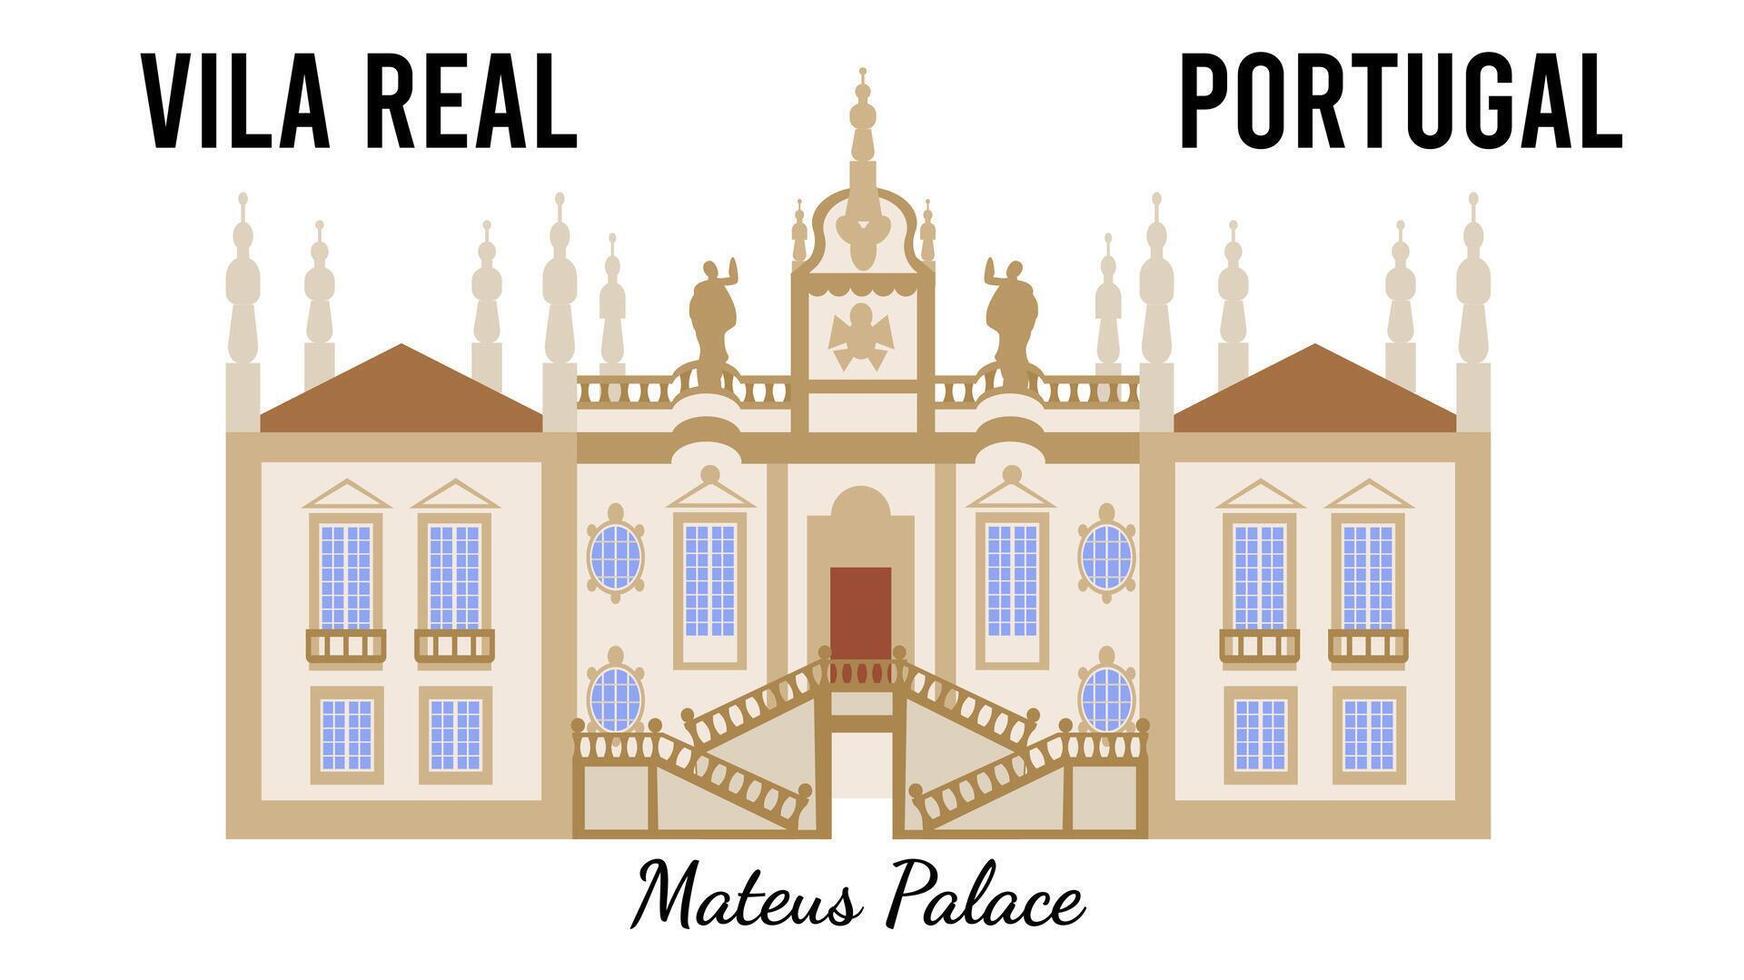 mateus palais à vila réel, le Portugal. de style plat illustration pour conception souvenir cartes postales vecteur